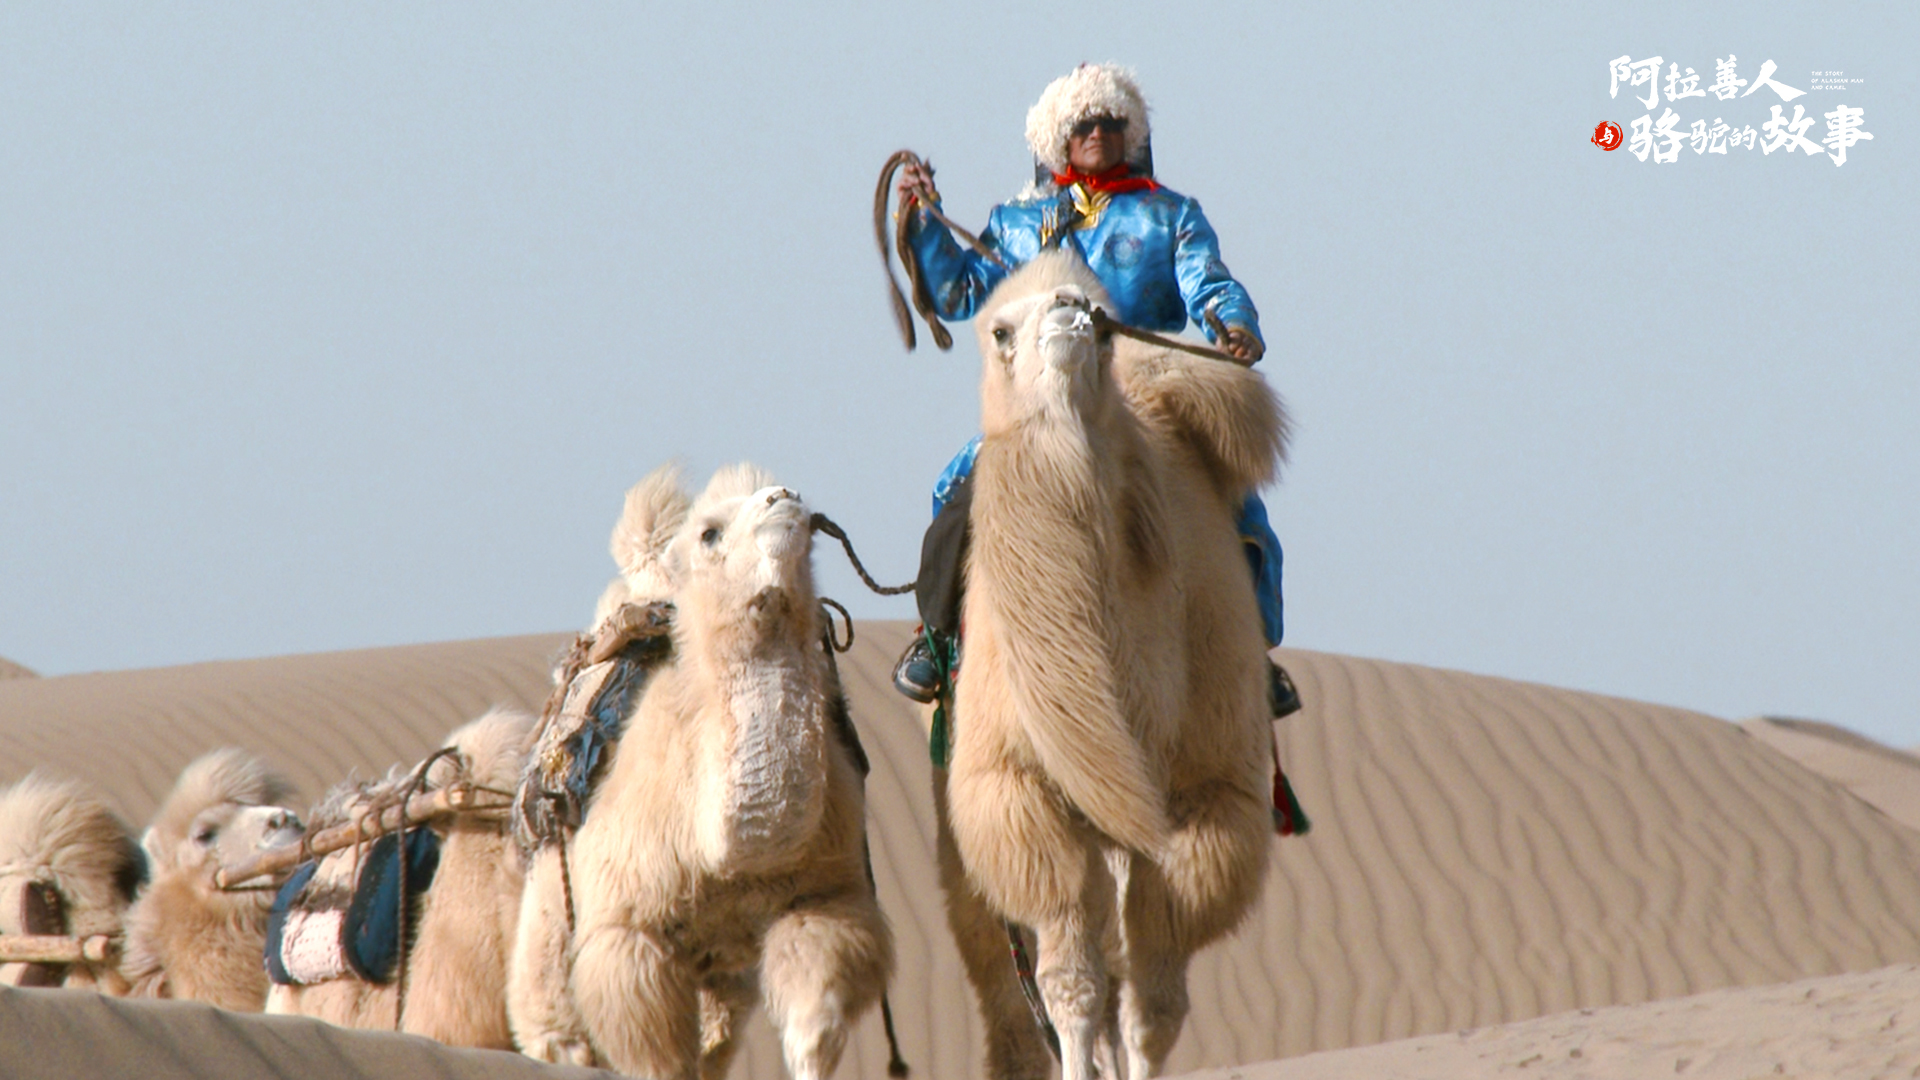 骆驼队在金黄沙漠中前进沙漠旅游 - PSD素材网